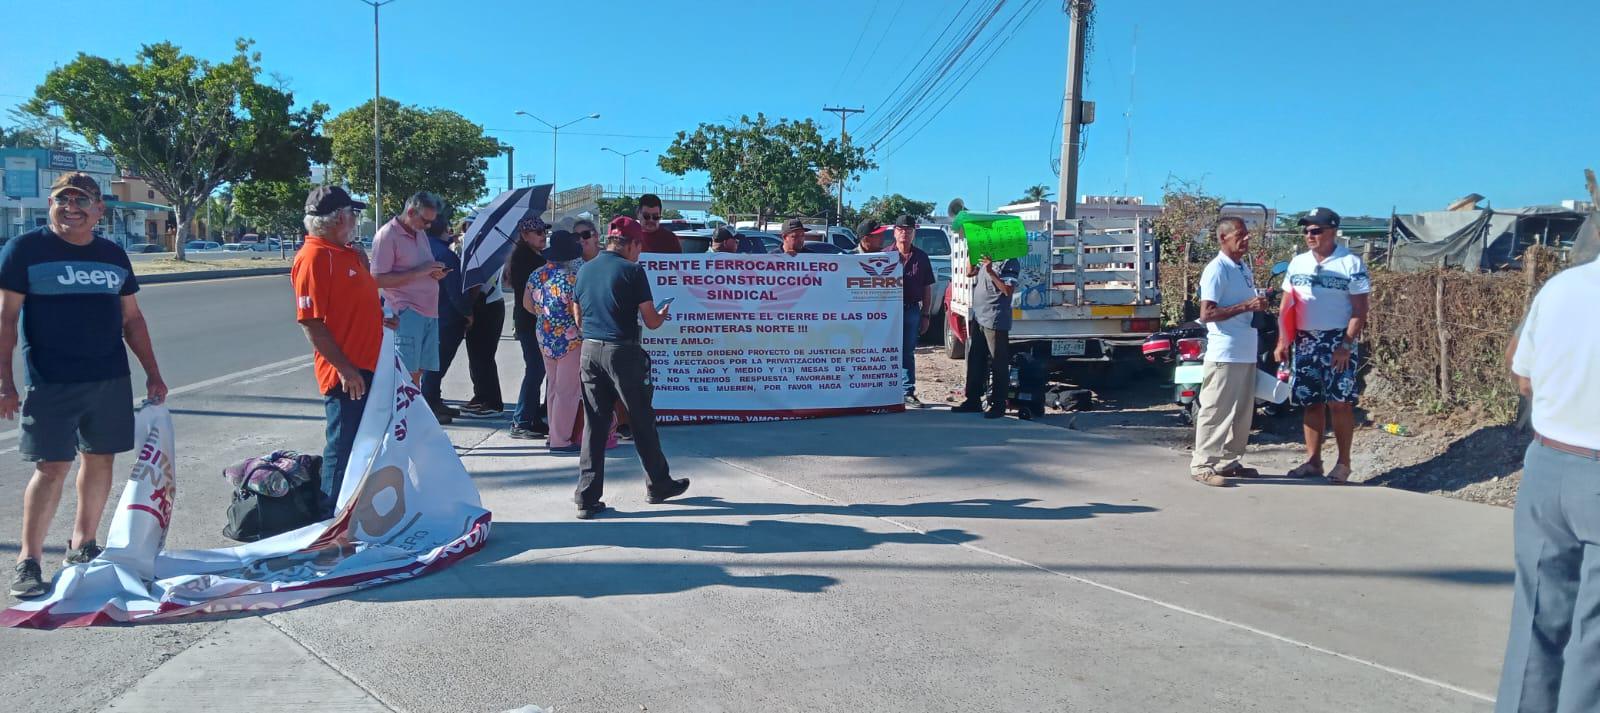 $!Interceptan manifestantes del Frente Ferrocarrilero a AMLO en el CRIT en Mazatlán